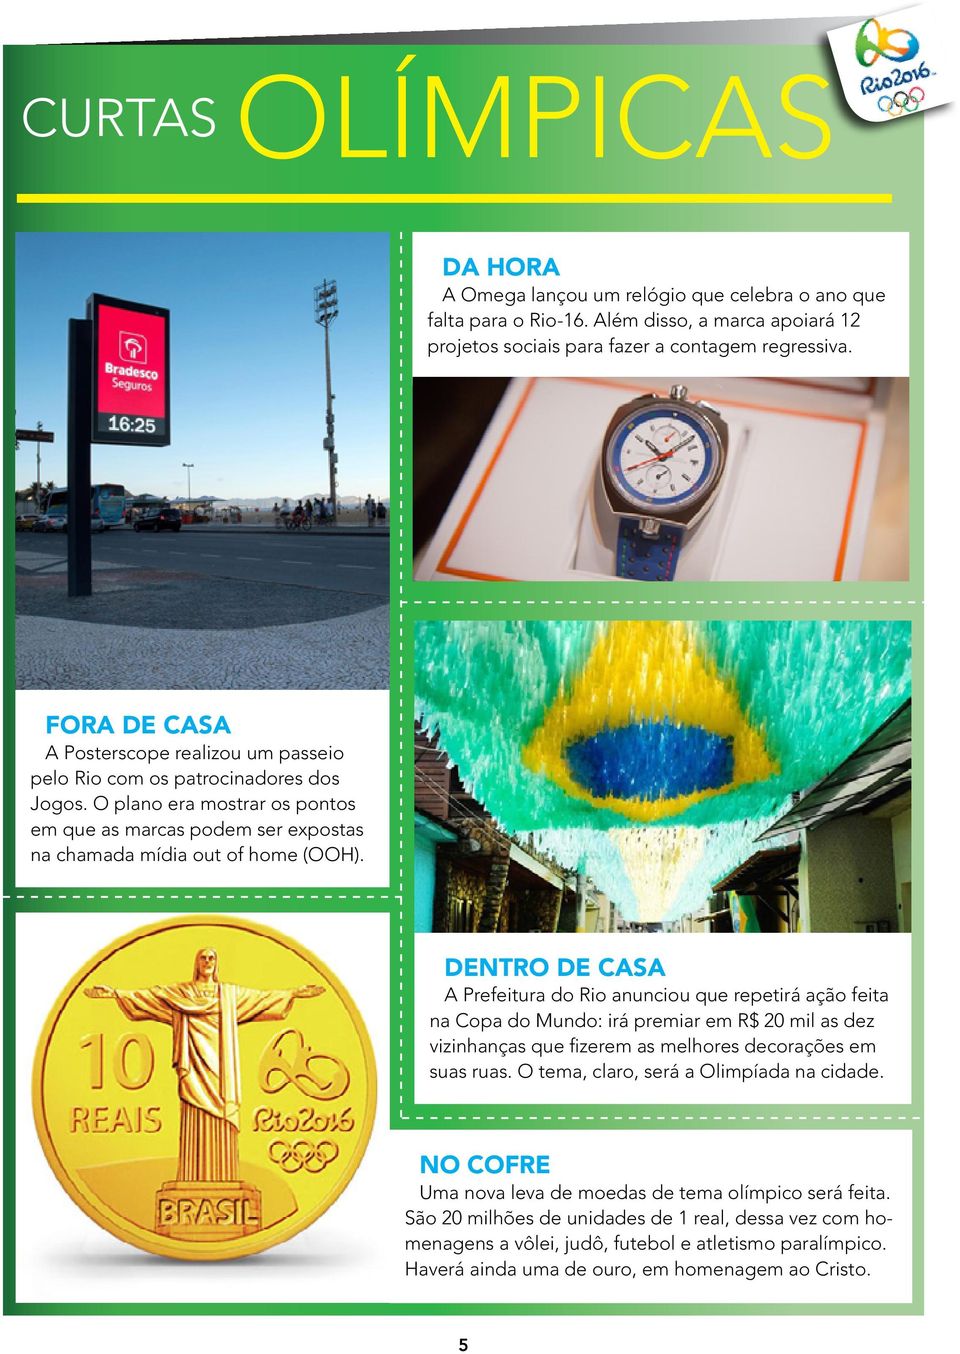 DENTRO DE CASA A Prefeitura do Rio anunciou que repetirá ação feita na Copa do Mundo: irá premiar em R$ 20 mil as dez vizinhanças que fizerem as melhores decorações em suas ruas.